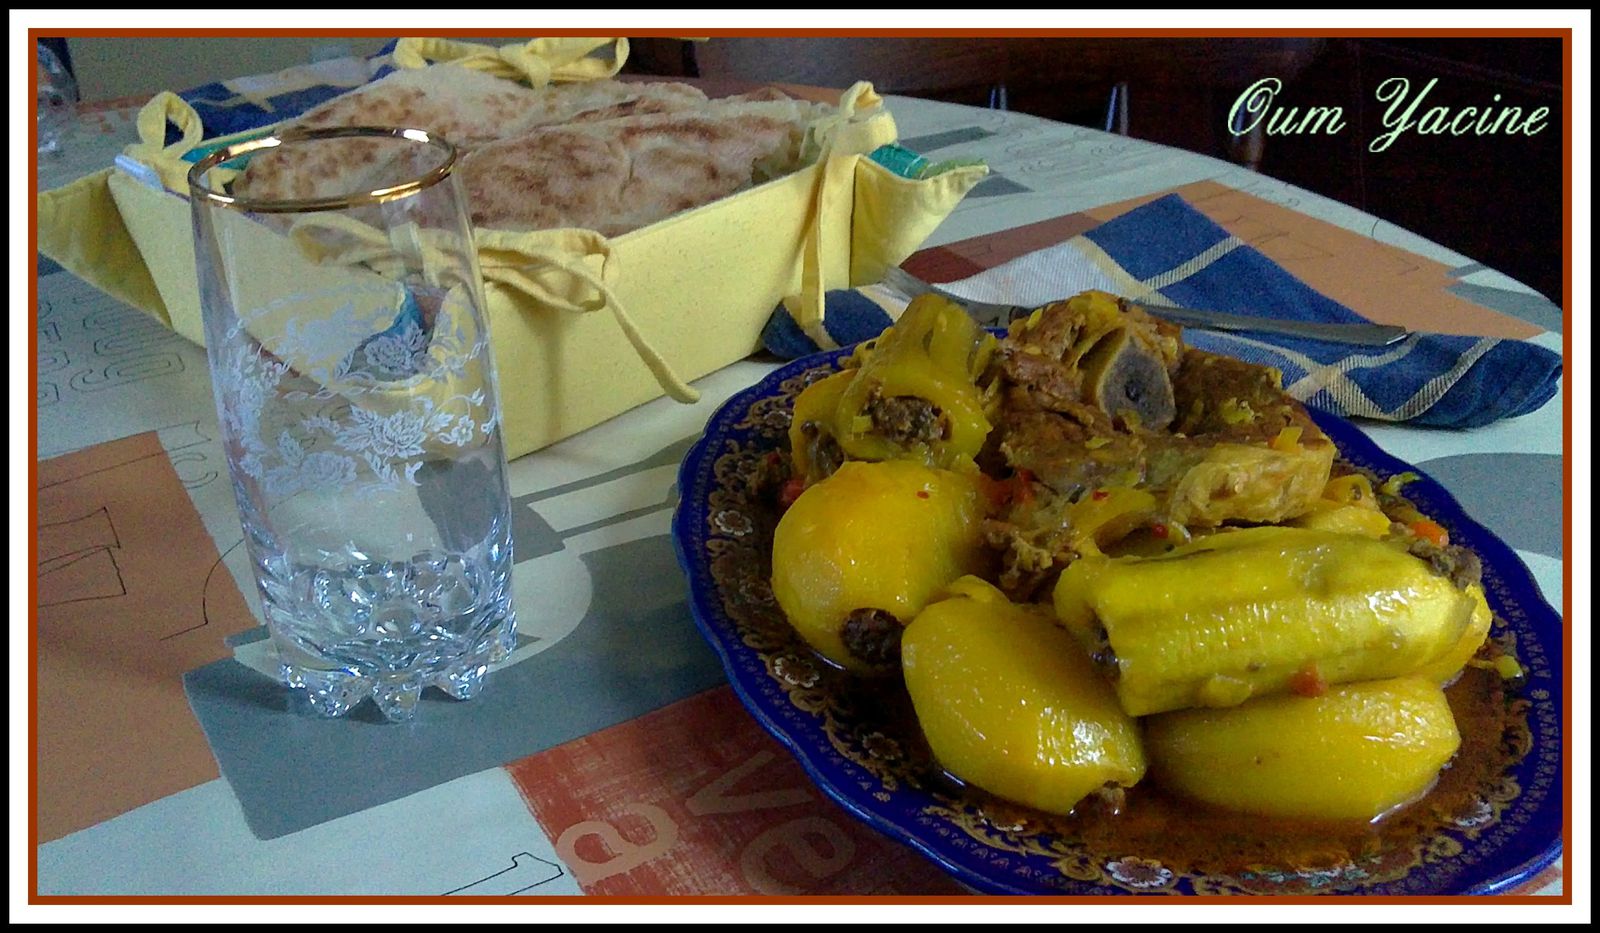 Tajine marocain aux légumes - Culinaire Amoula